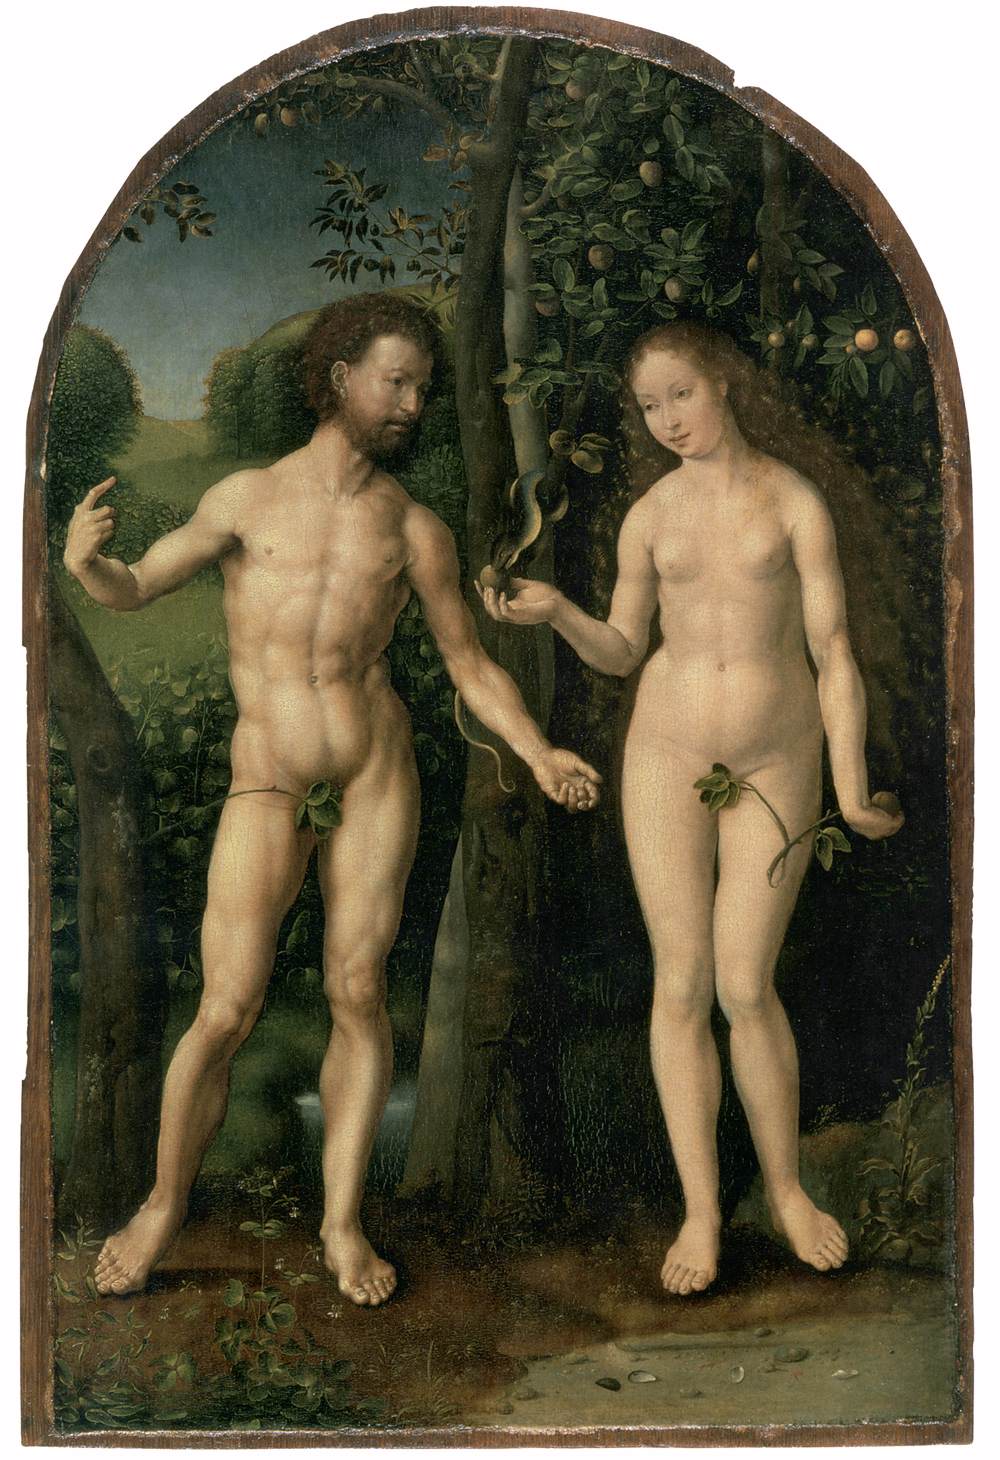 Adam i Ewa